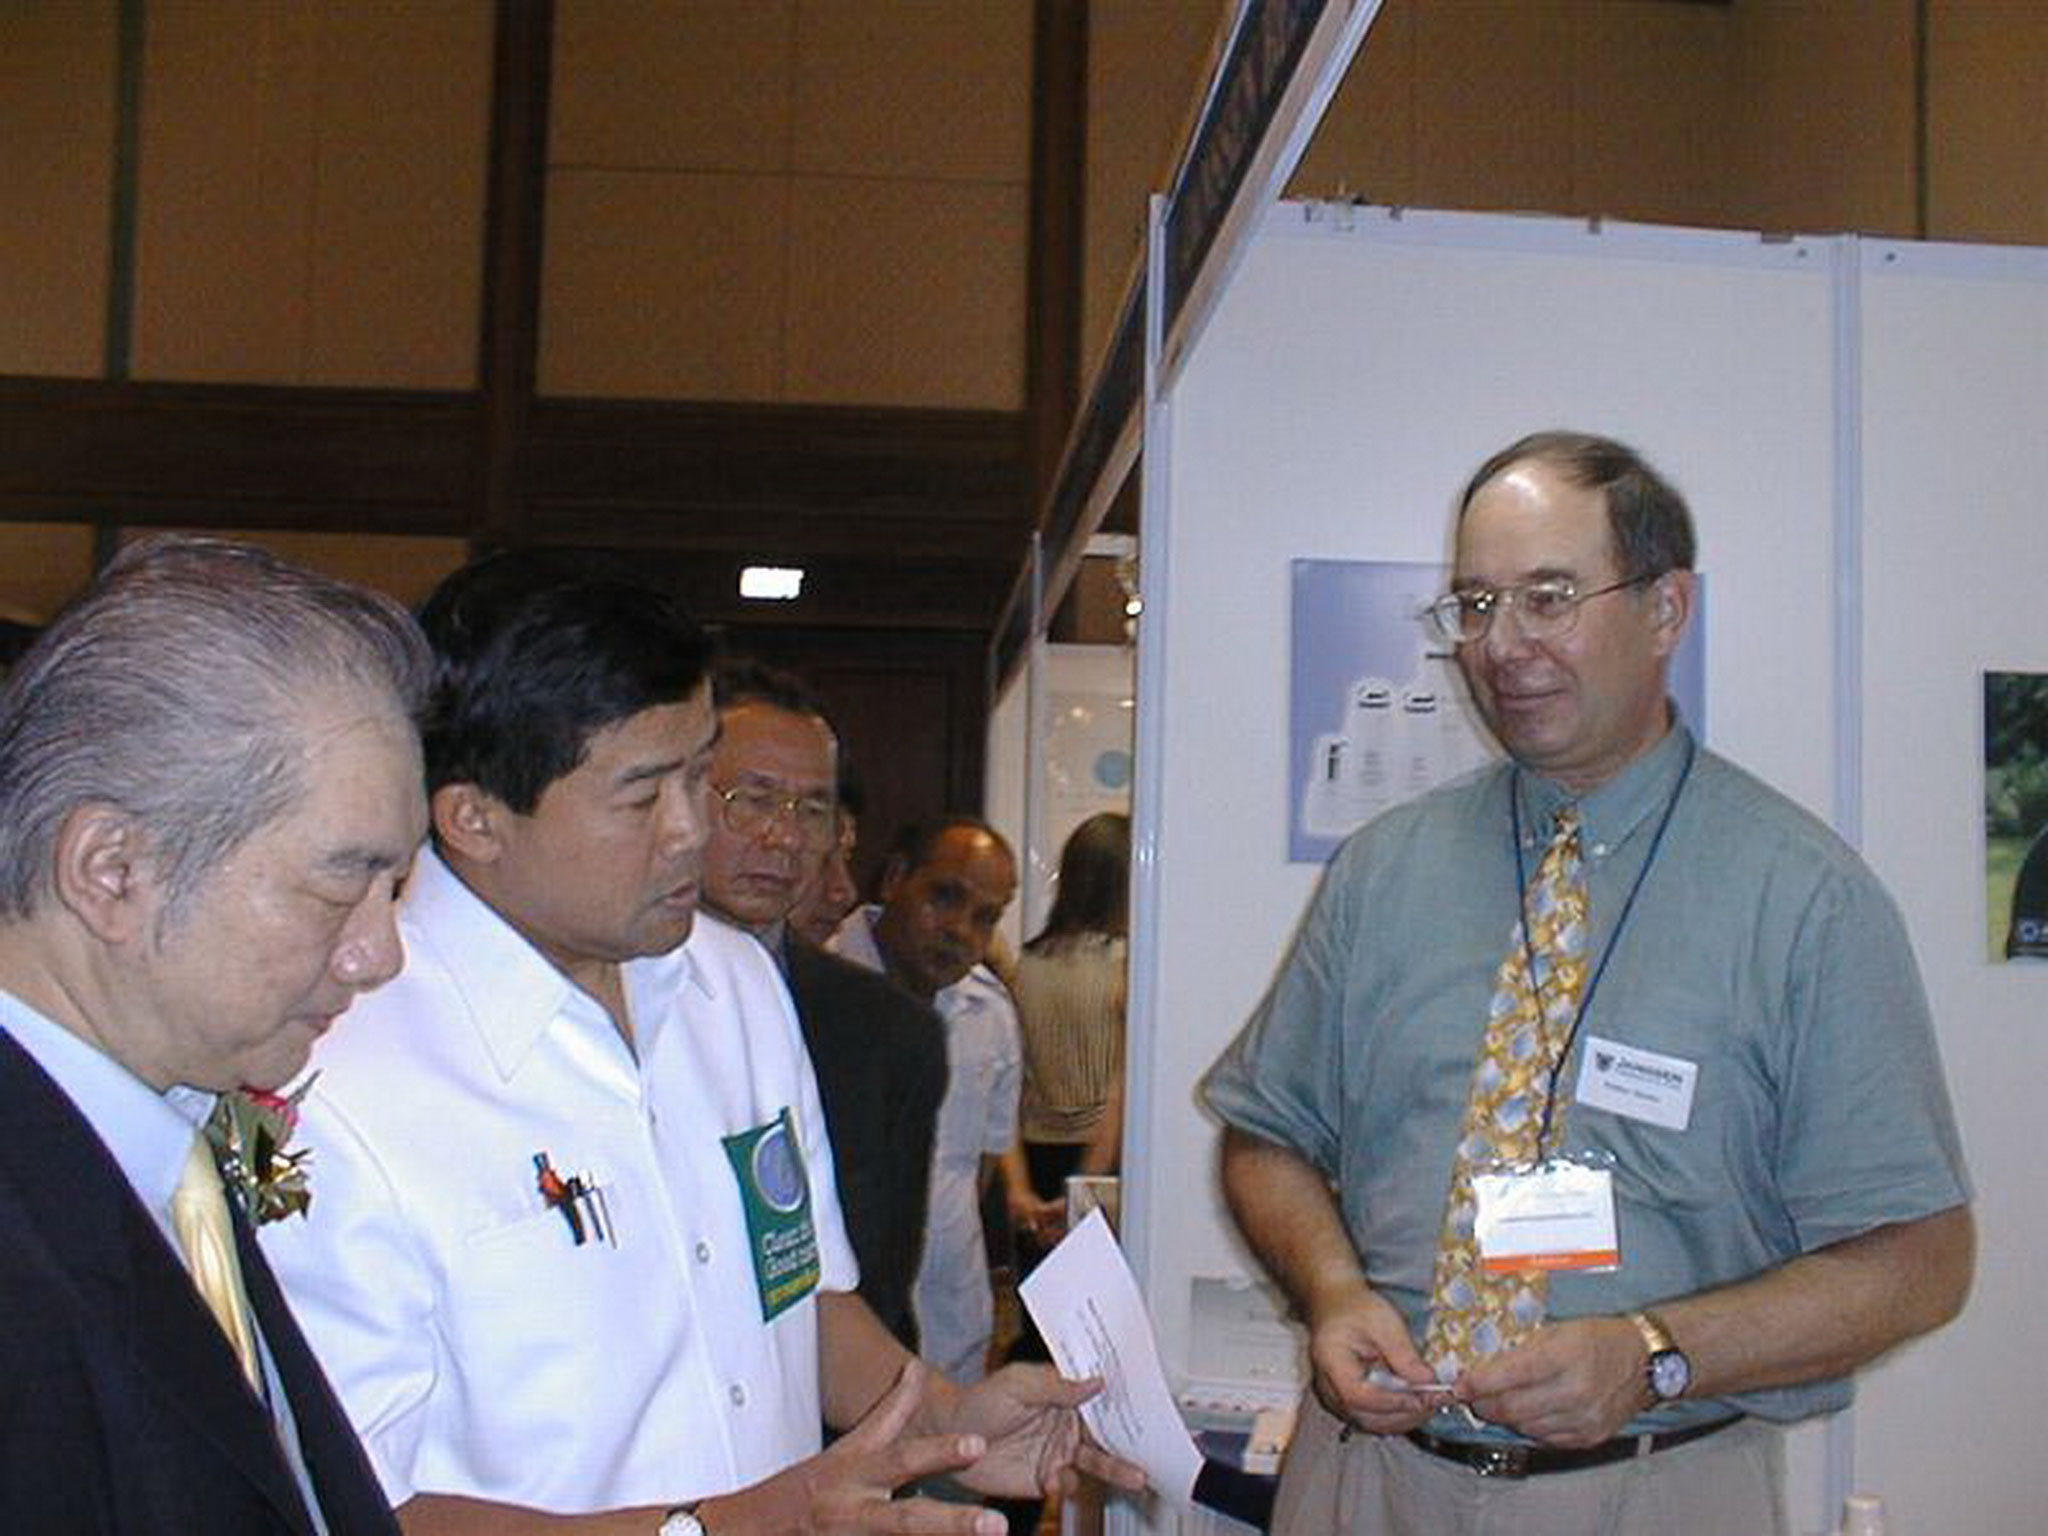 ISPA in Phuket in 2000